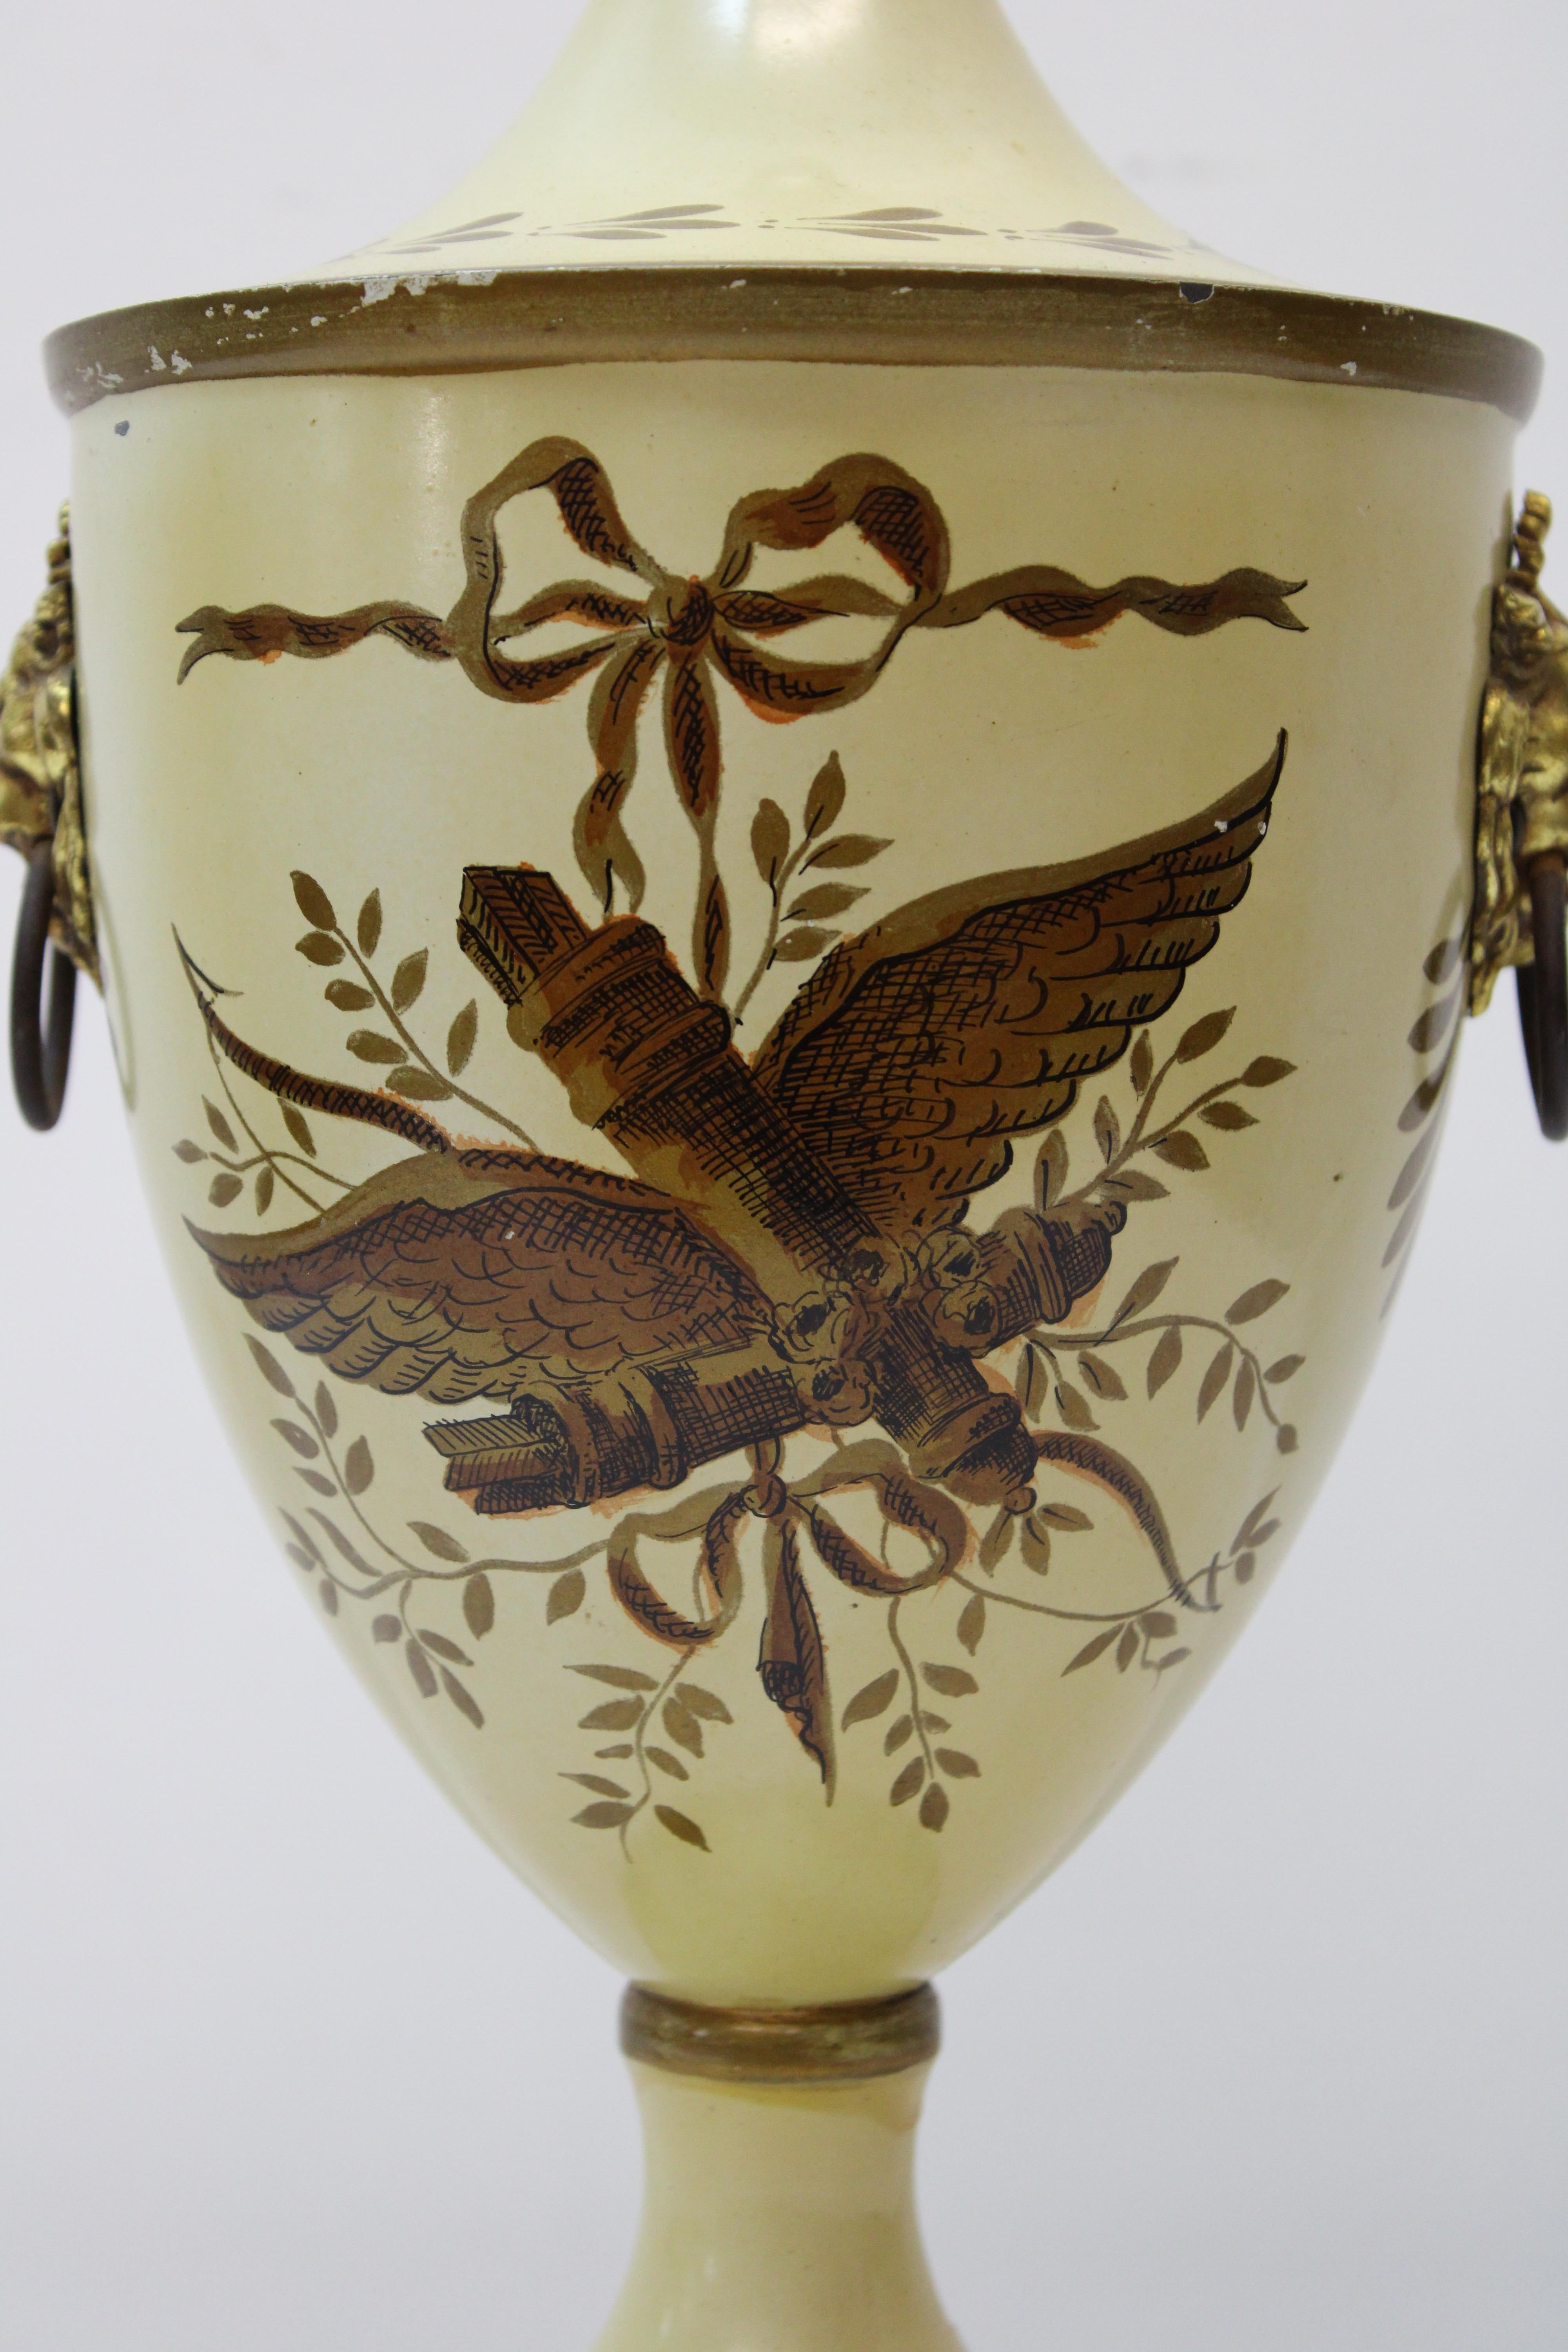 C. 20ème siècle.

Urne française peinte à la main, avec poignées en laiton à tête de lion.